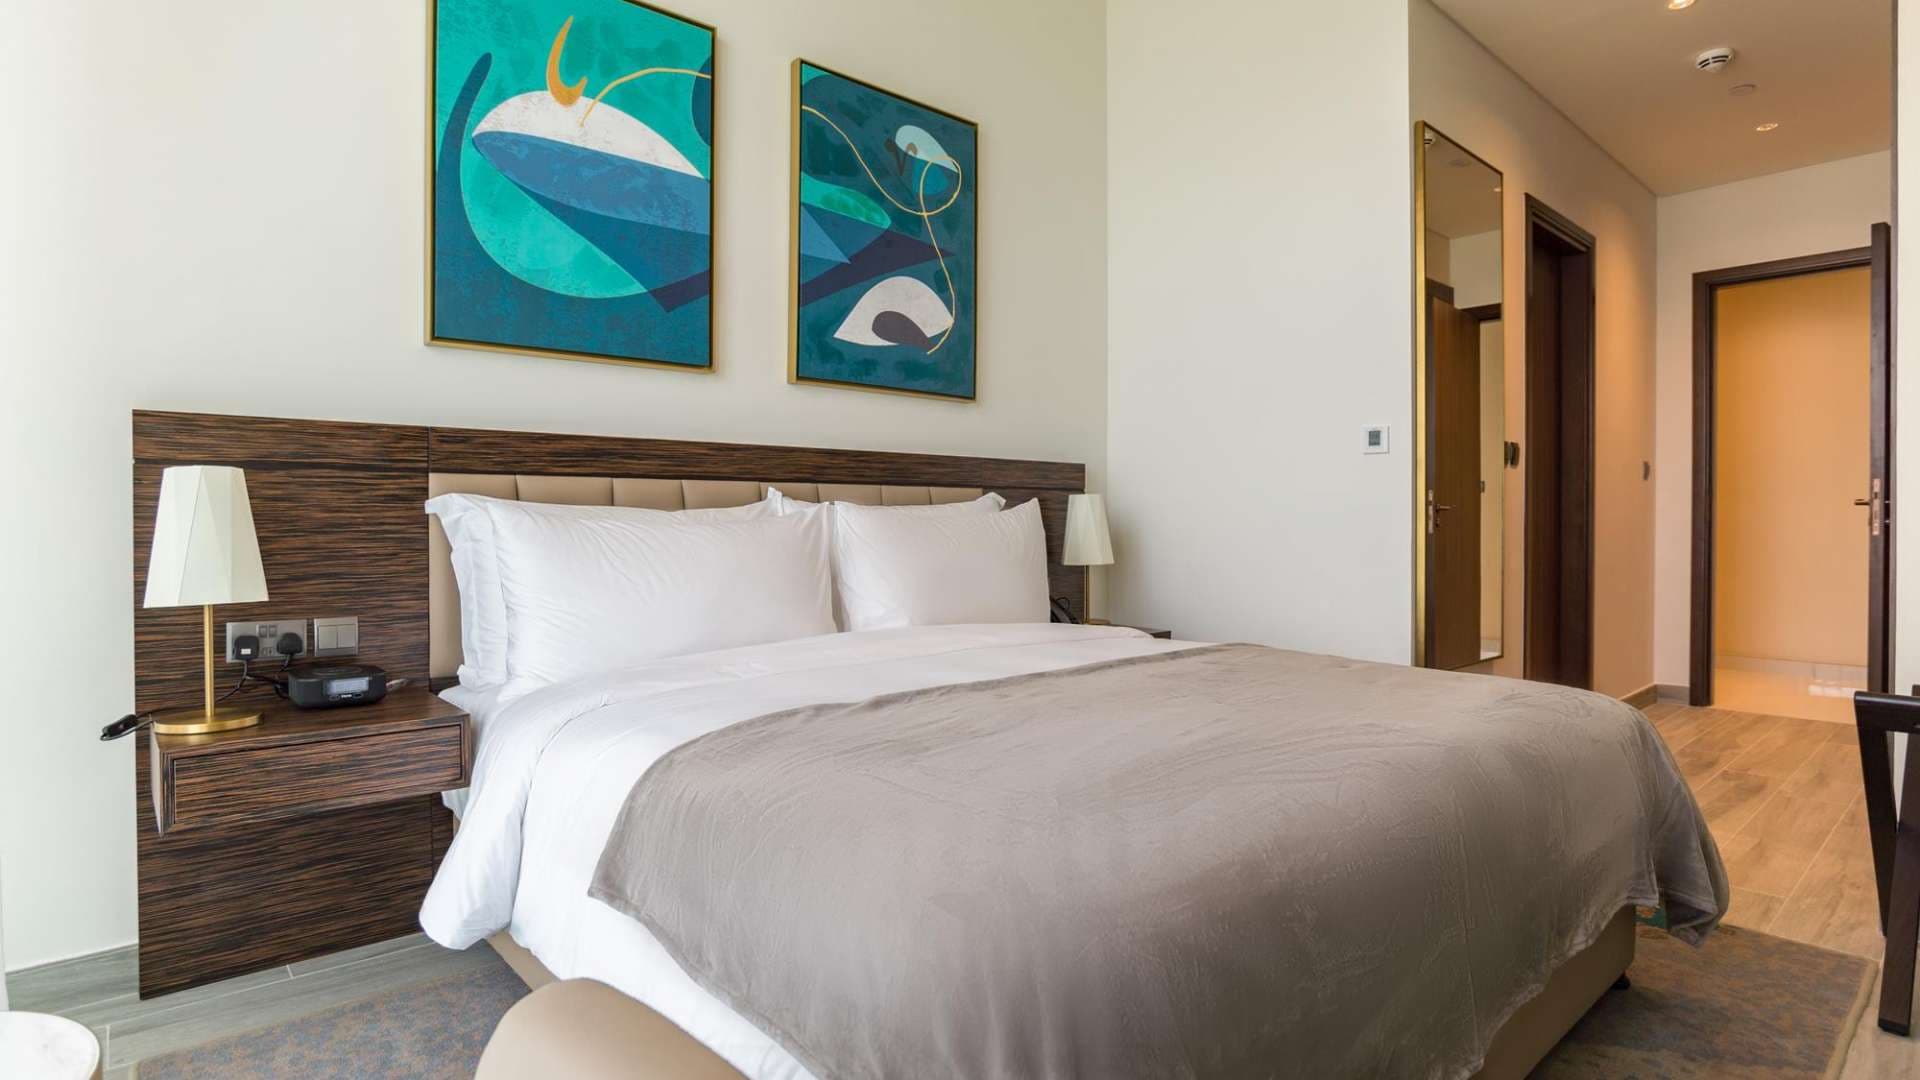 3 Bedroom Apartment For Sale Avani Palm View Hotel Suites Lp06823 21866c33a40b2800.jpg